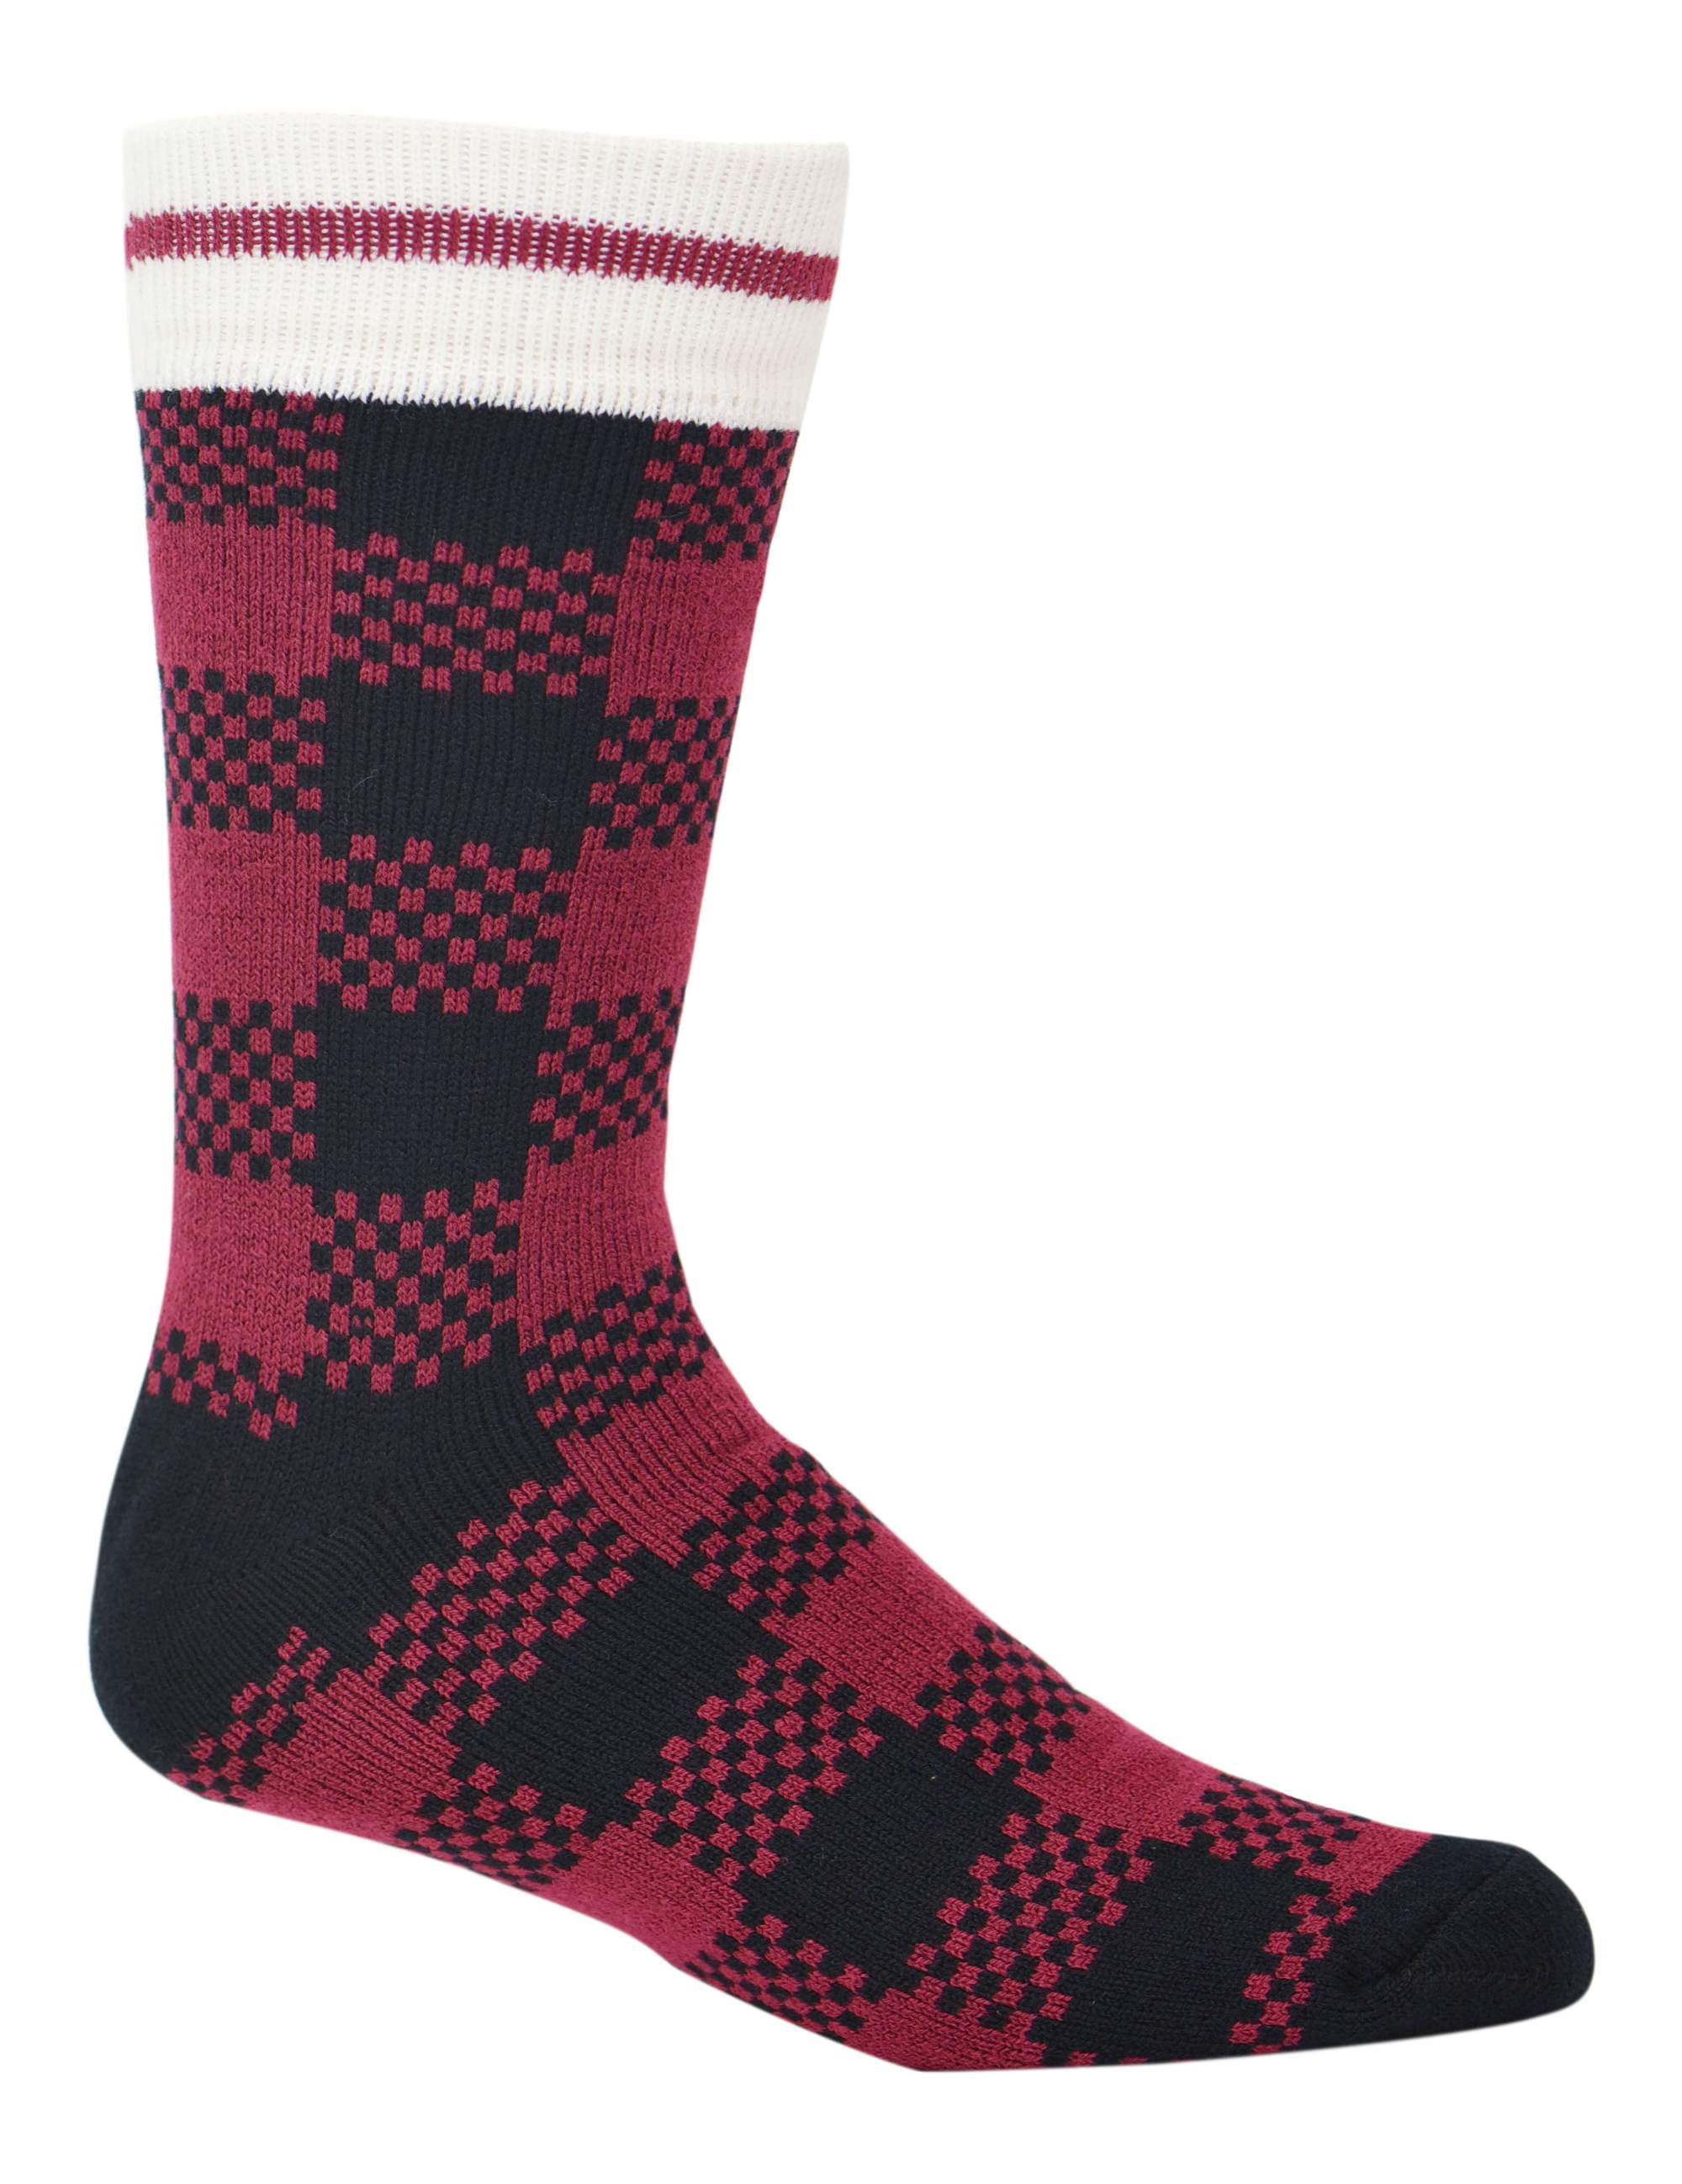 Men's Kodiak Thermal Wool Socks 3-Pack - Walmart.com